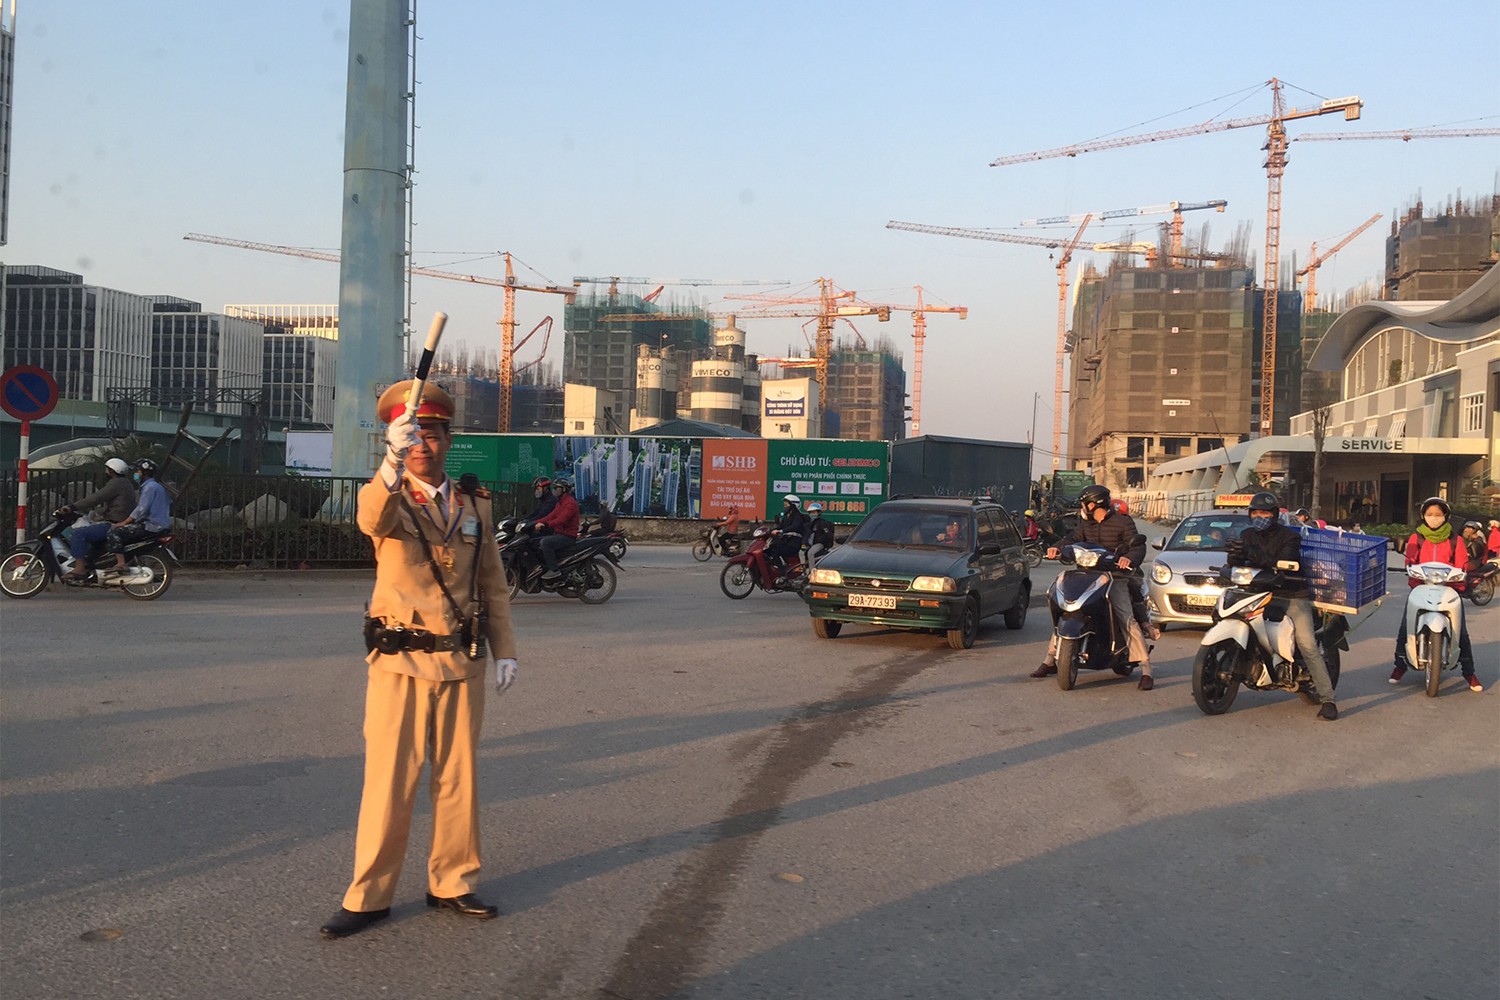 Les transports, le développement de la ville et la situation géographique de la ville sont les principaux facteurs de pollution de l’air à Hanoi.